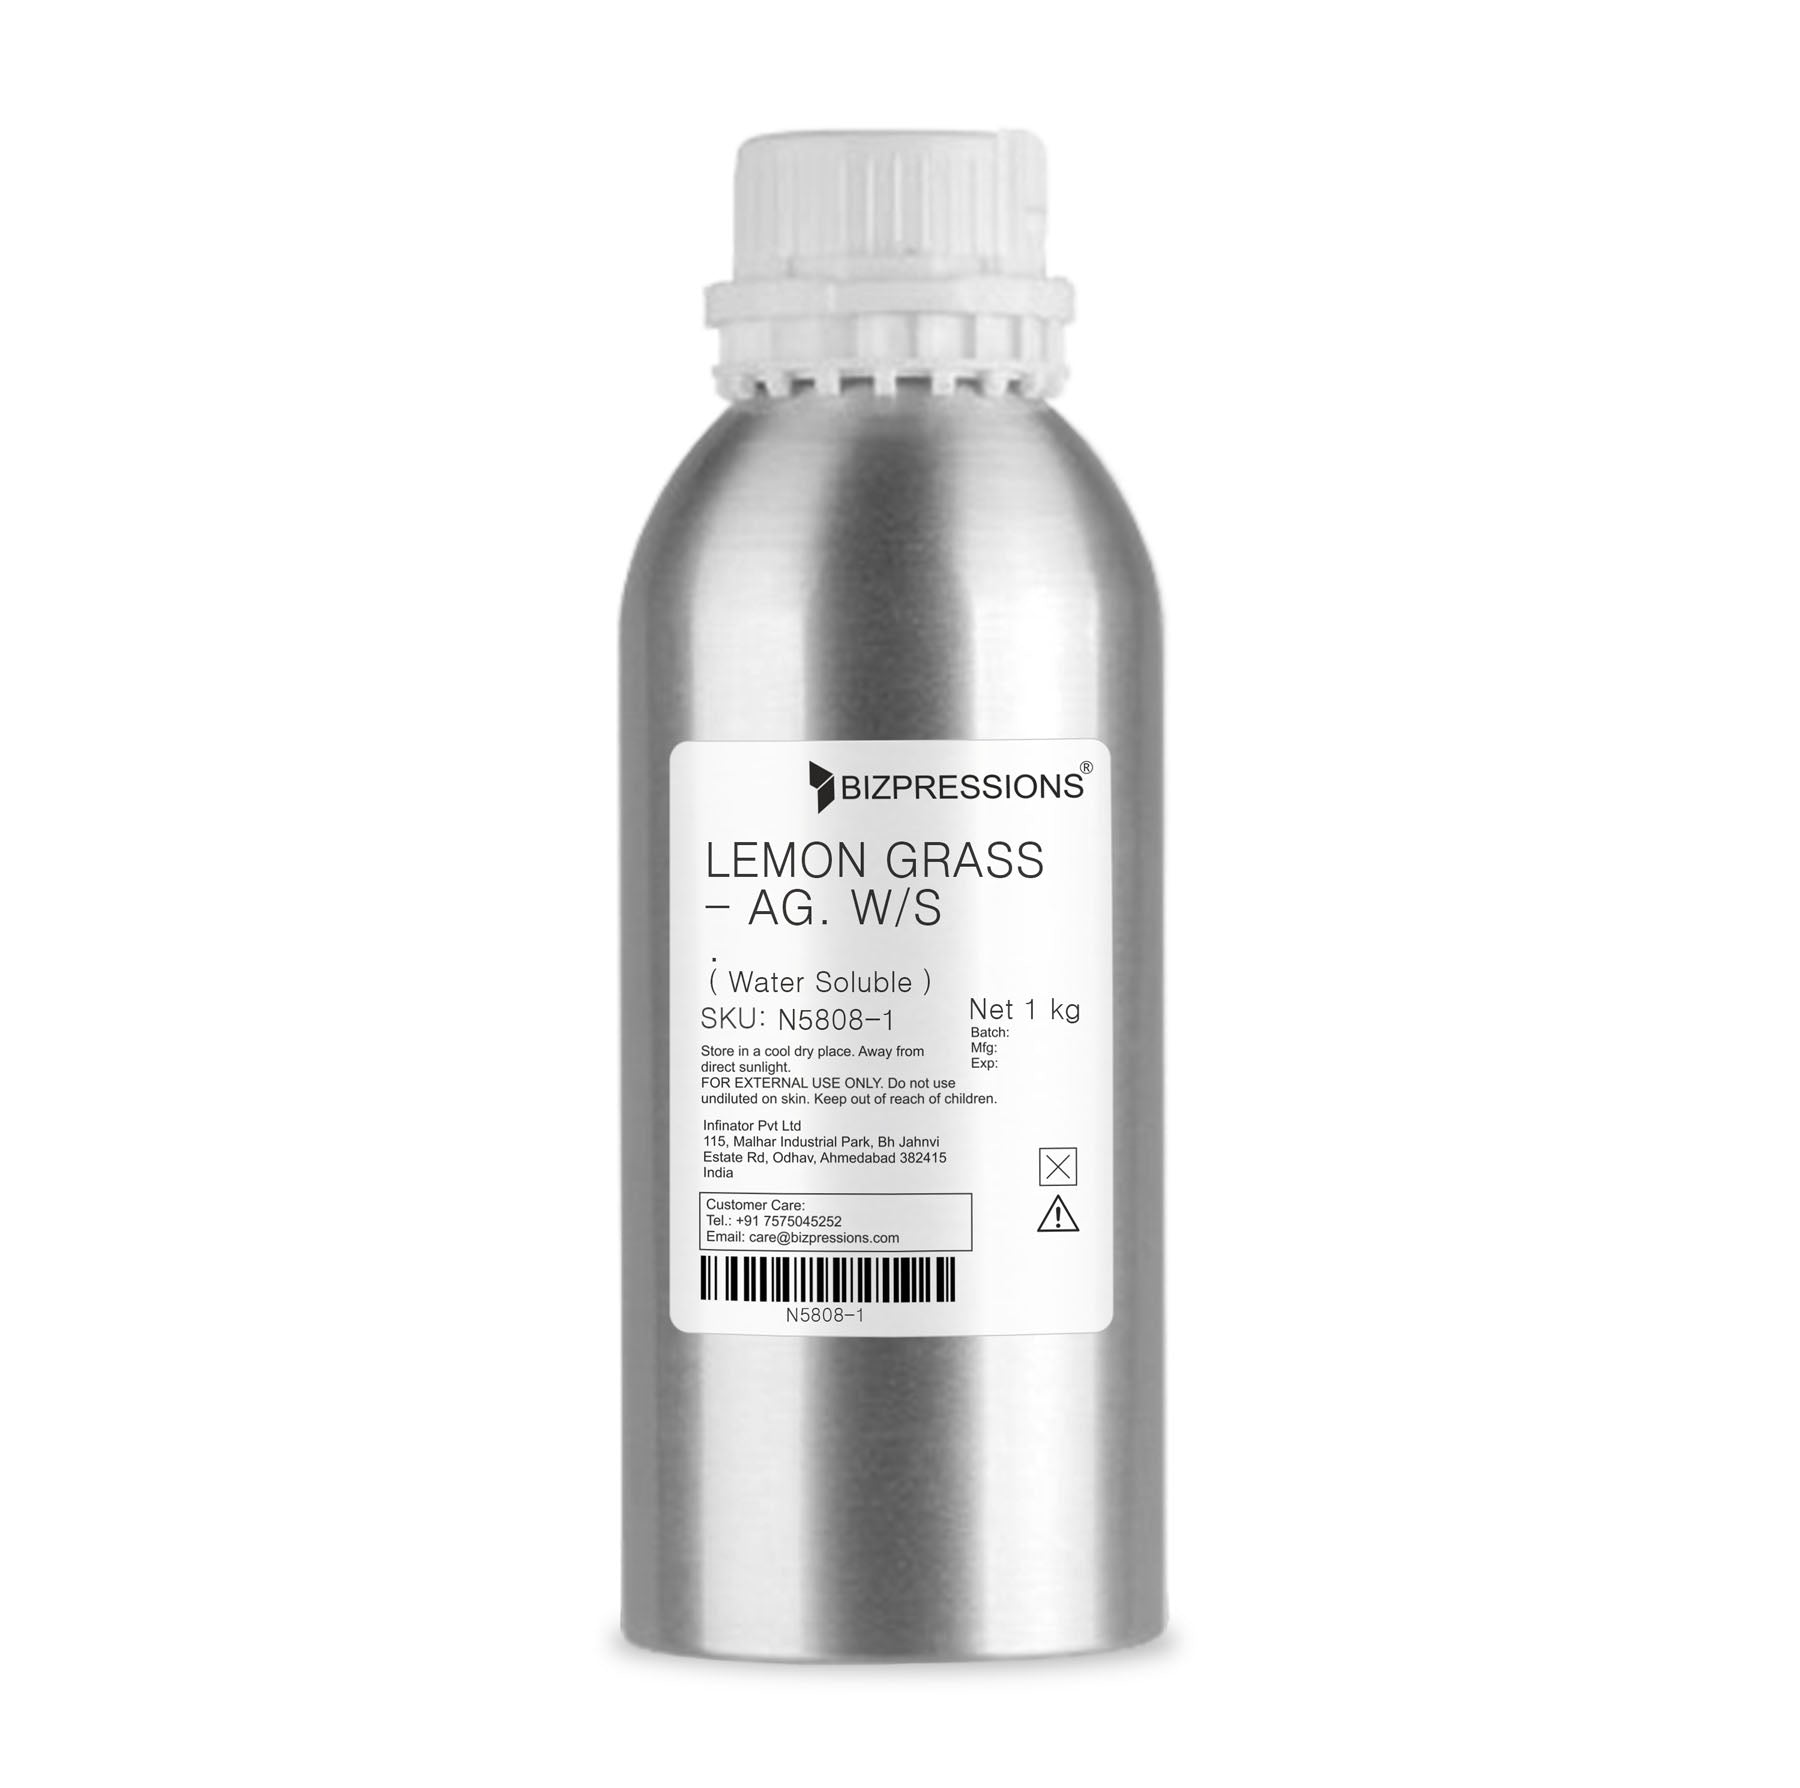 LEMON GRASS - AG. W/S - Fragrance ( Water Soluble ) - 1 kg